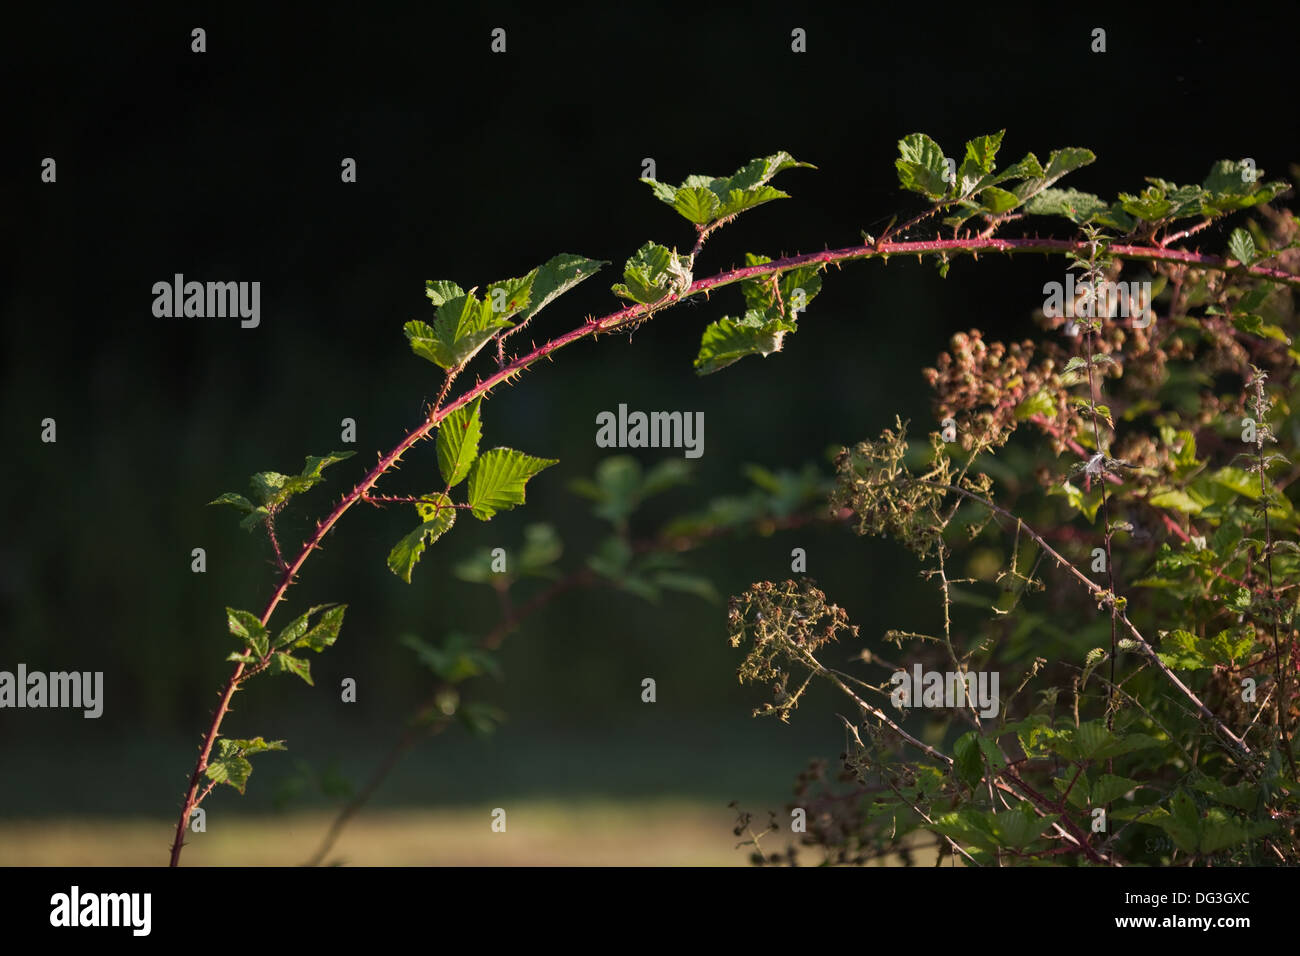 BlackBerry oder Brombeere (Rubus Fruticosus). Neue kräftiger wuchs, die für die Verzweigung und Verwurzelung, bilden neue Anlage ermöglicht. Stockfoto